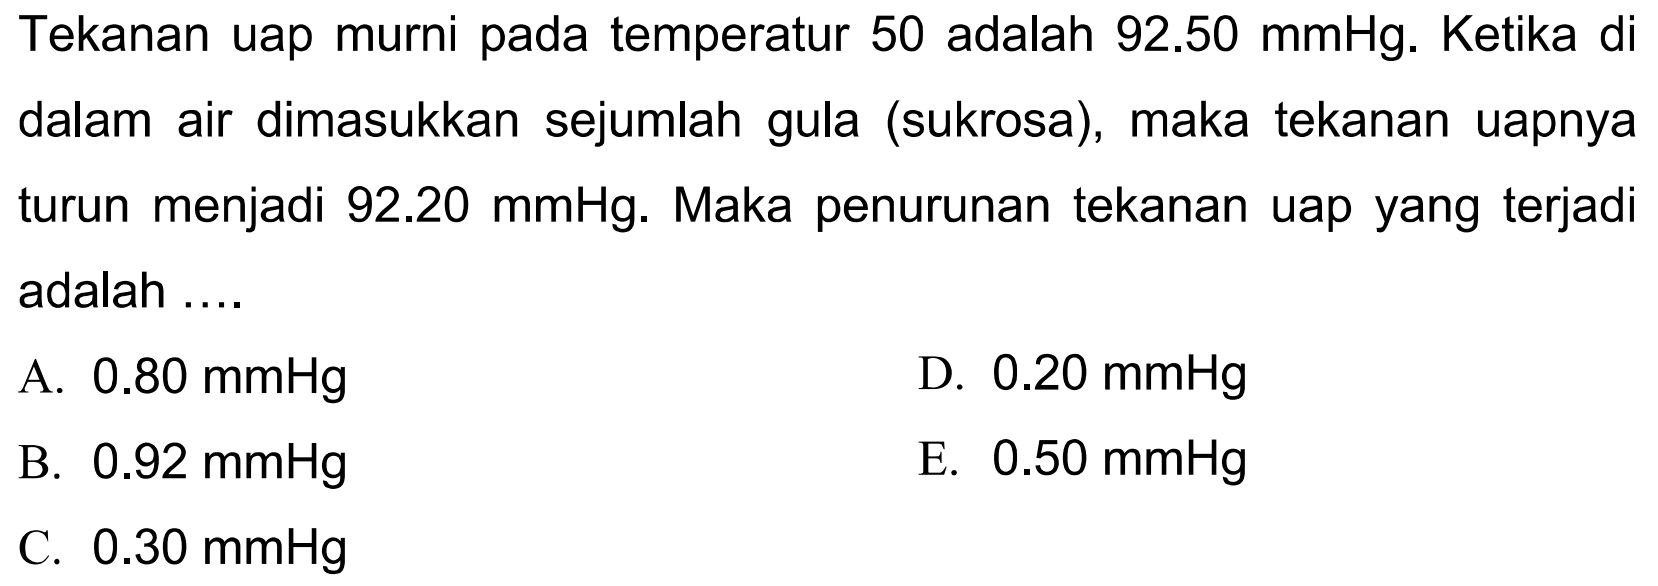 Tekanan uap murni pada temperatur 50 adalah  92.50 mmHg .  Ketika di dalam air dimasukkan sejumlah gula (sukrosa), maka tekanan uapnya turun menjadi  92.20 mmHg . Maka penurunan tekanan uap yang terjadi adalah ....